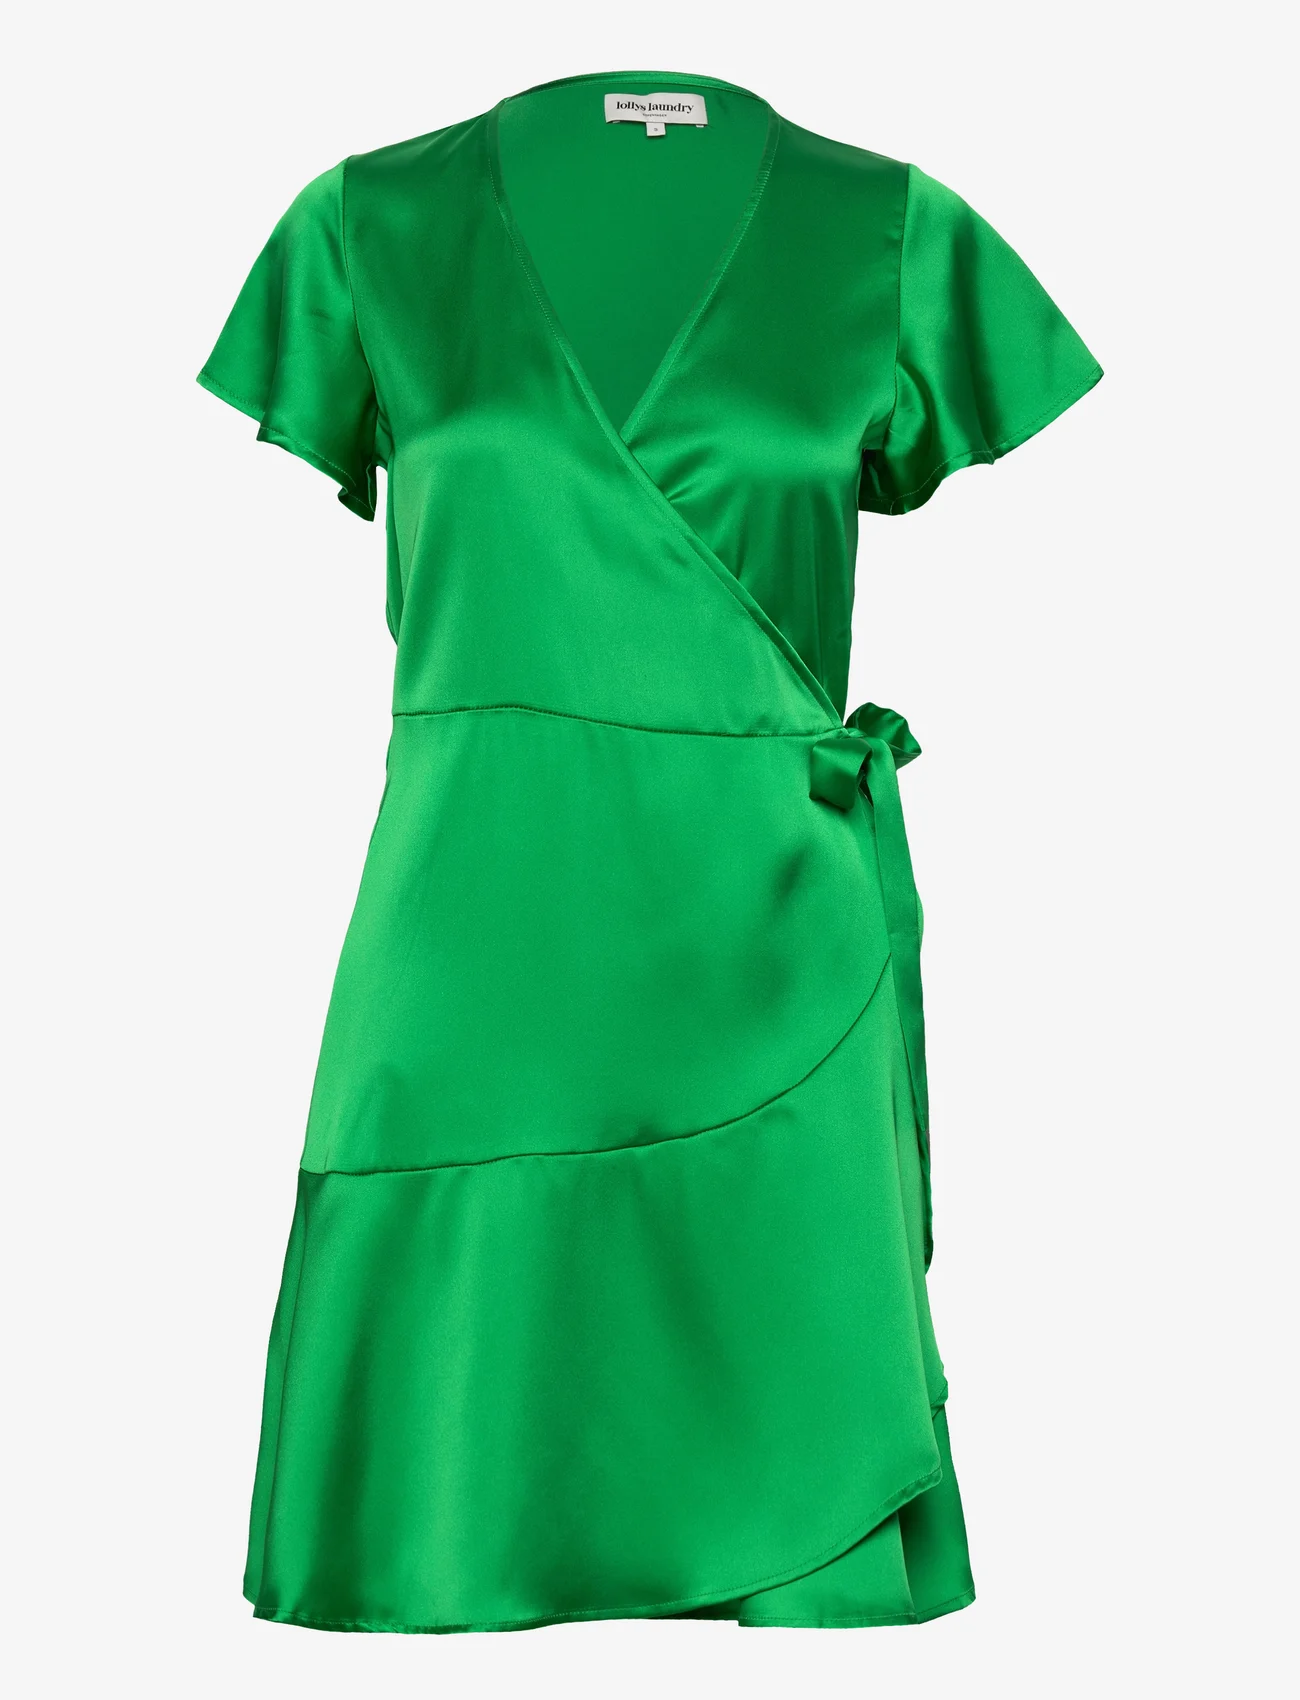 Lollys Laundry - Miranda Wrap around dress - odzież imprezowa w cenach outletowych - green - 0